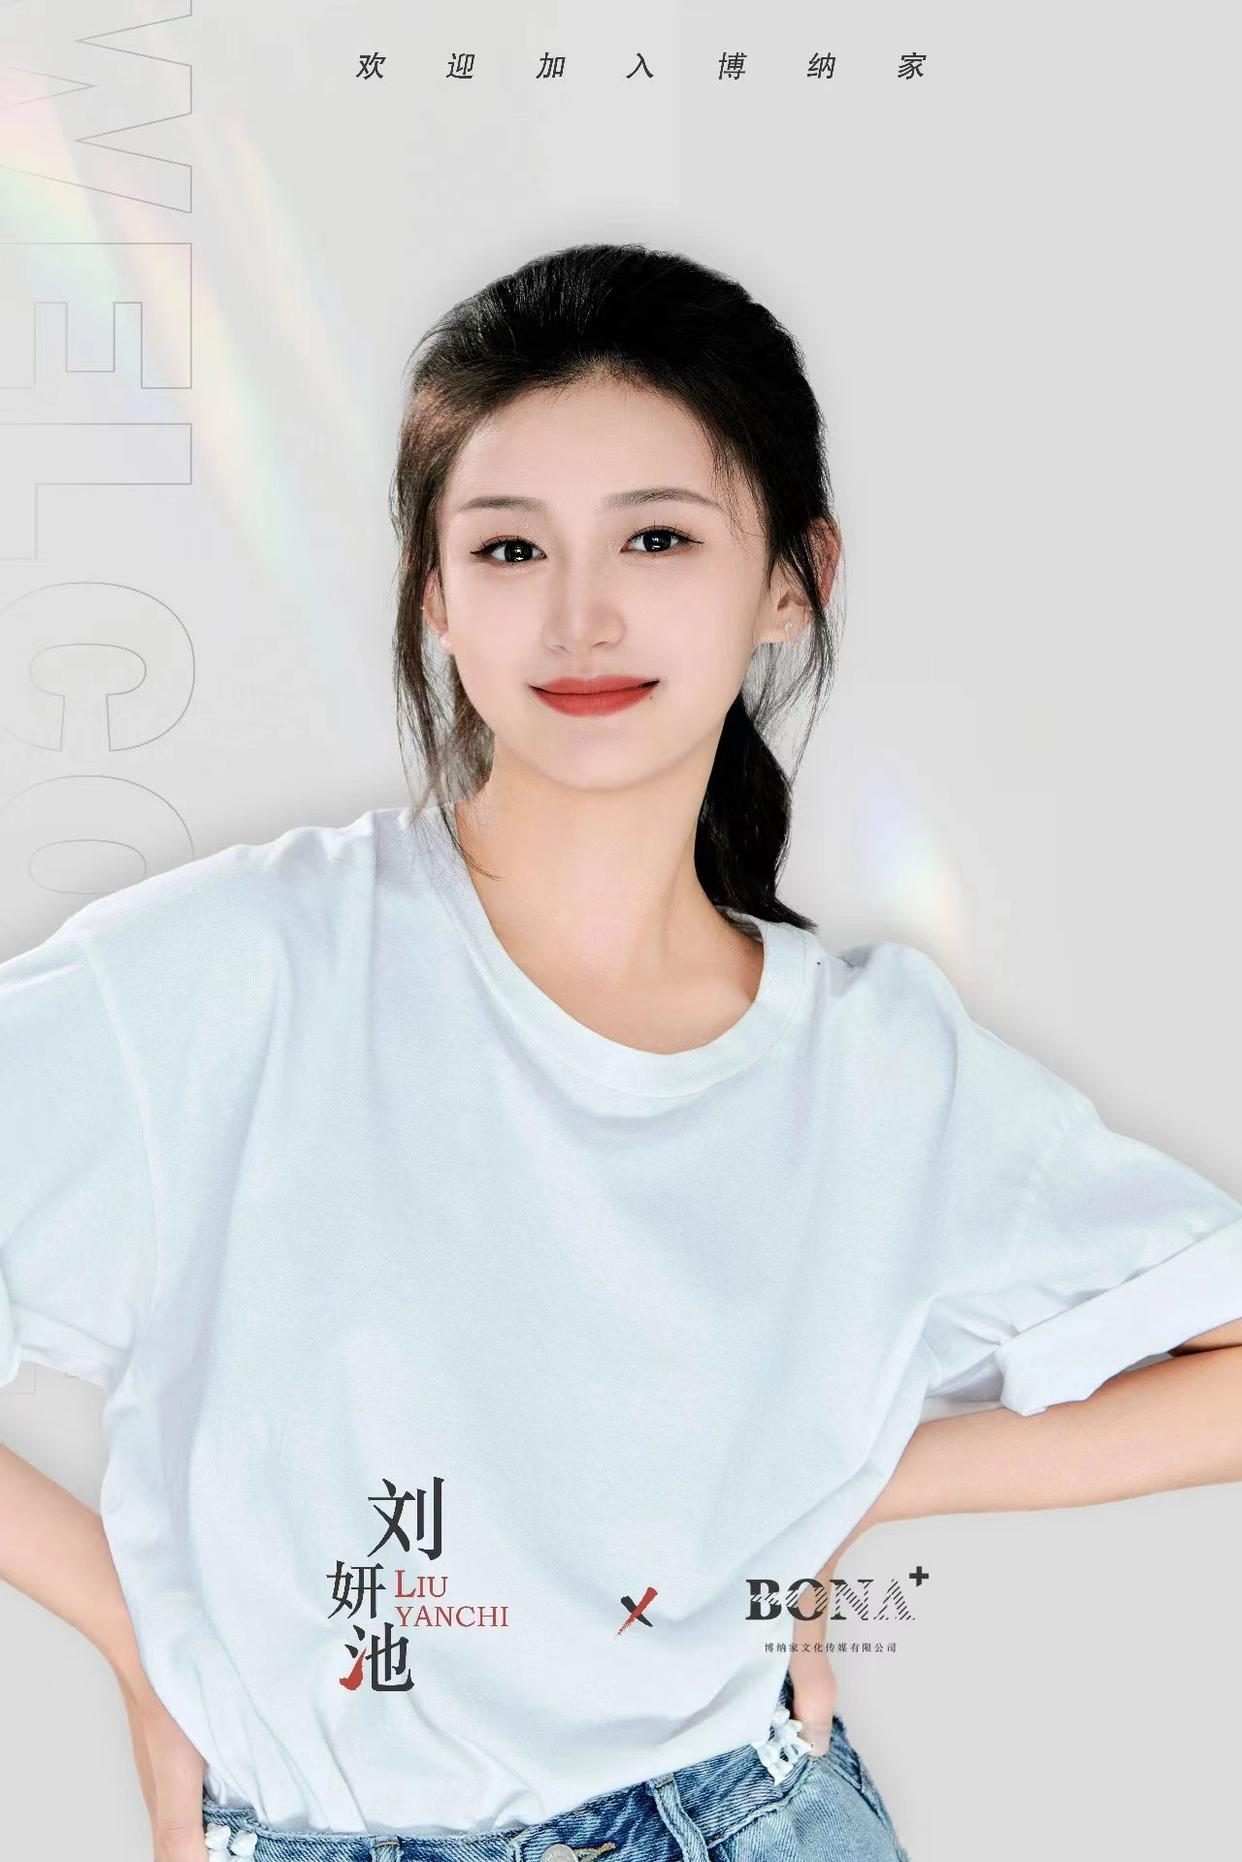 T-ara芝妍再次刷新歷代級美貌，幹練微笑狙擊了粉絲們的心 - Wishnote 所有美好如你所願